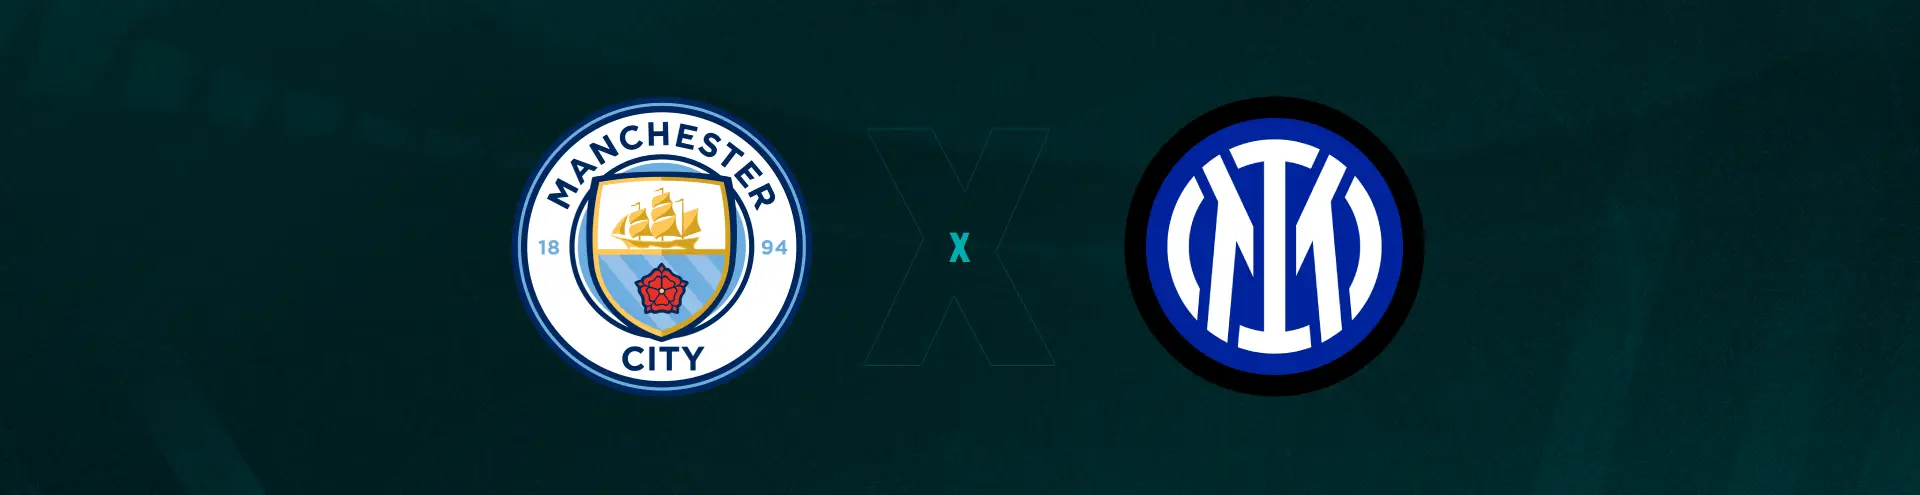 Palpite: Manchester City x Inter de Milão - Champions League - 10/06/2023